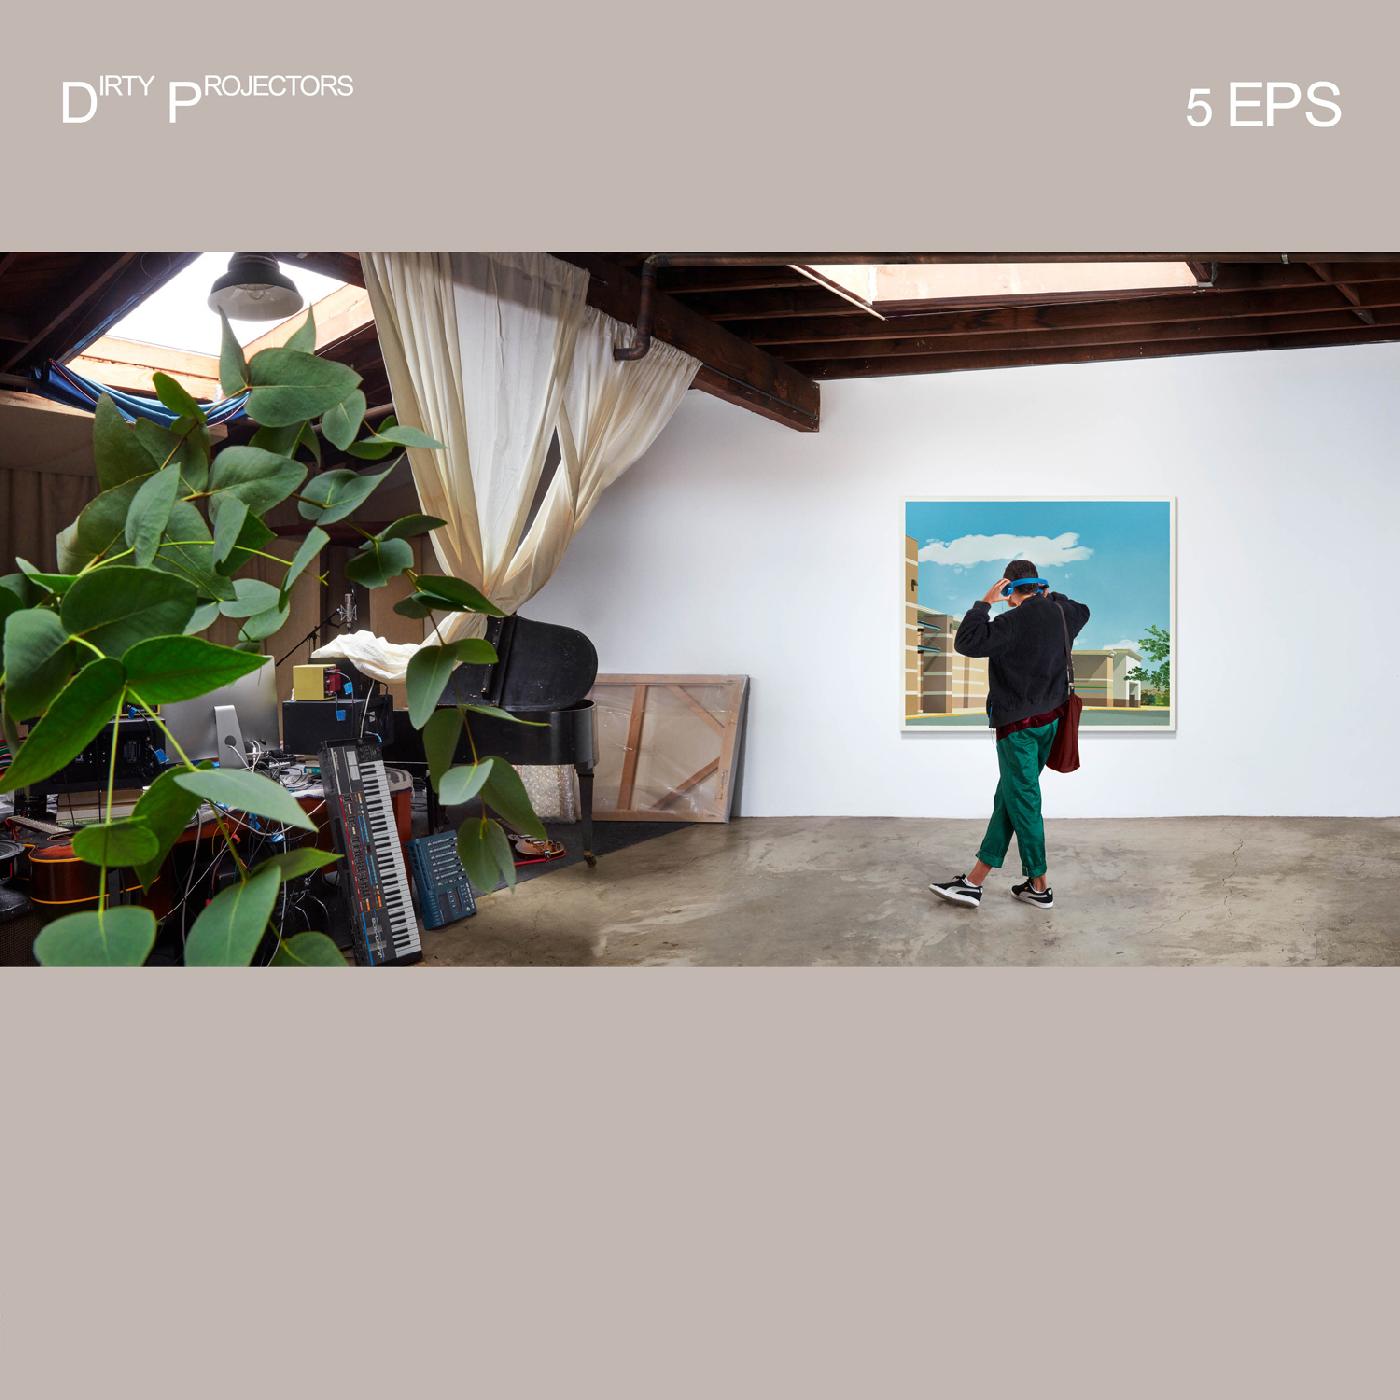 Dirty Projectors | 5EPs | Vinyl